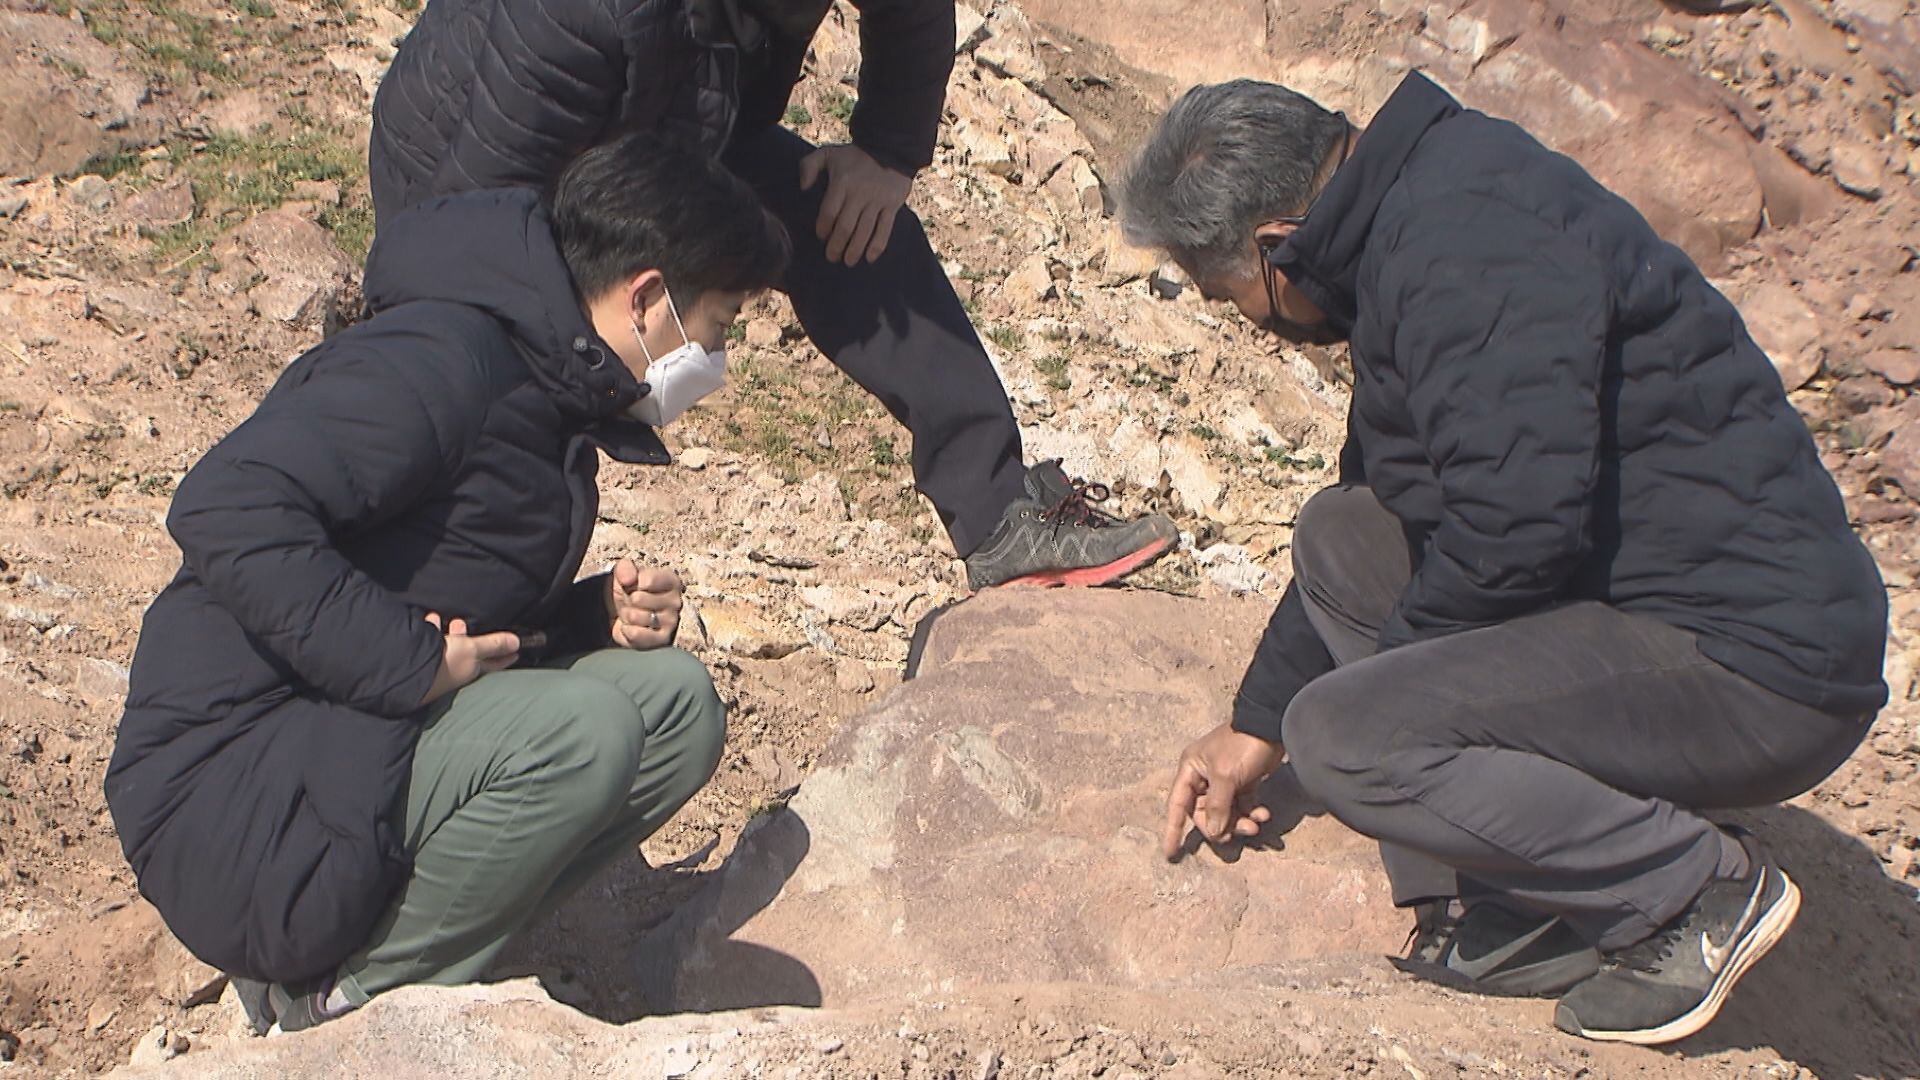 공룡 알 화석 발견자 조금연 씨(사진 오른쪽). 전문가 못지않은 식견으로 화석에 관해 설명하고 있다